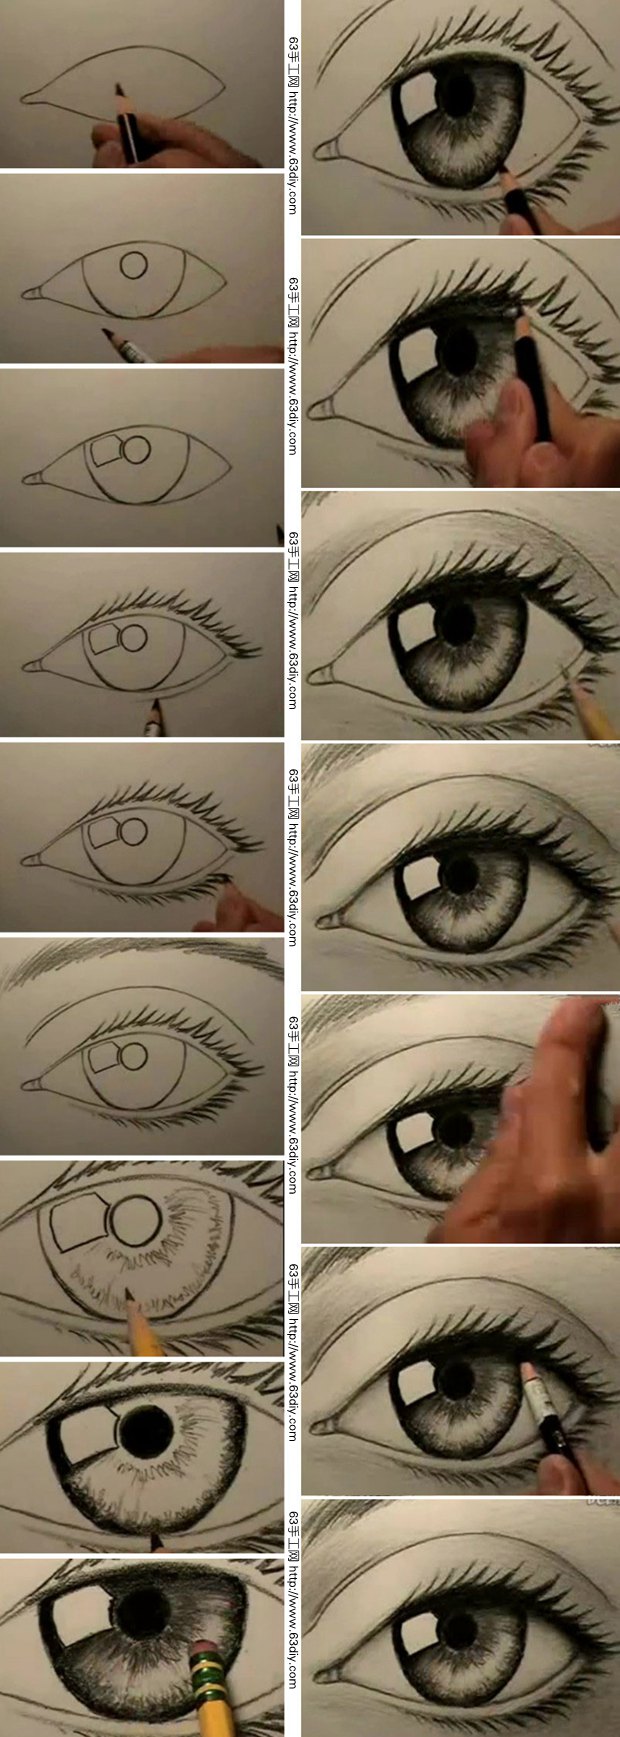 今天我们就来学习一个眼睛的手绘方法